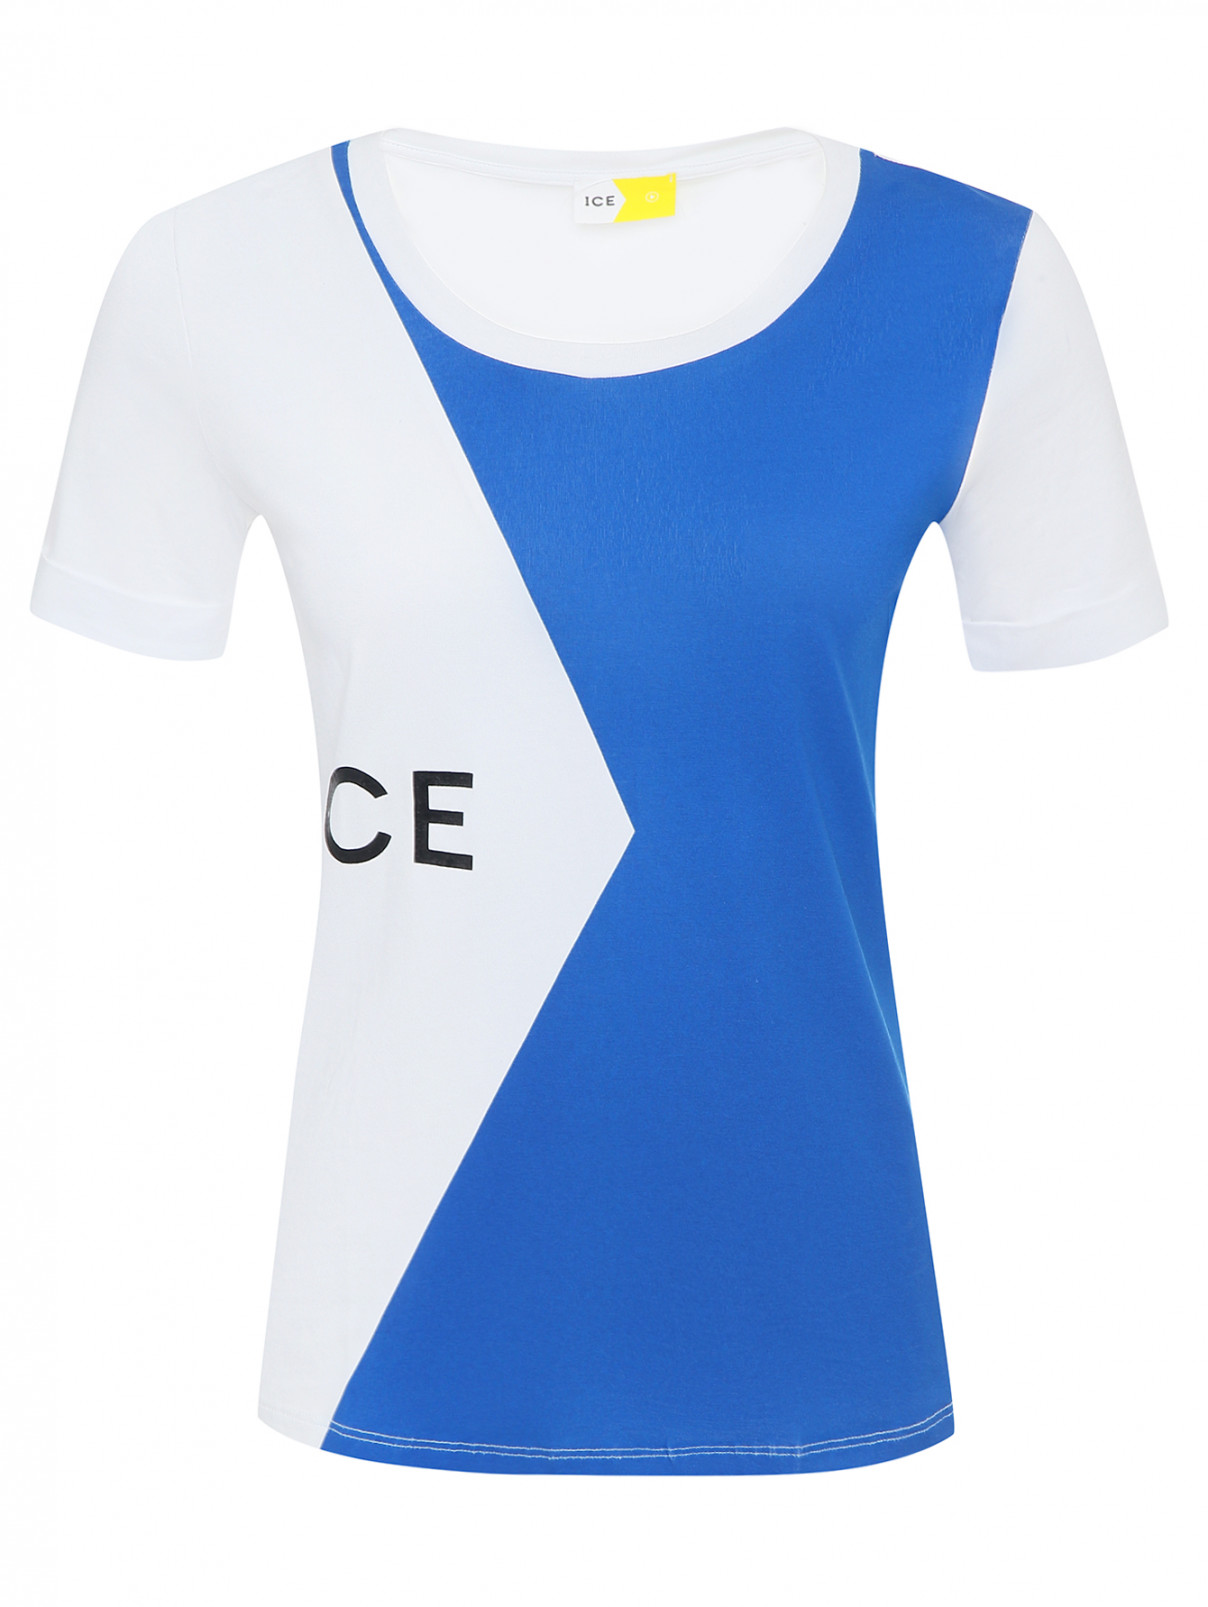 Трикотажная футболка с принтом Ice Play  –  Общий вид  – Цвет:  Белый